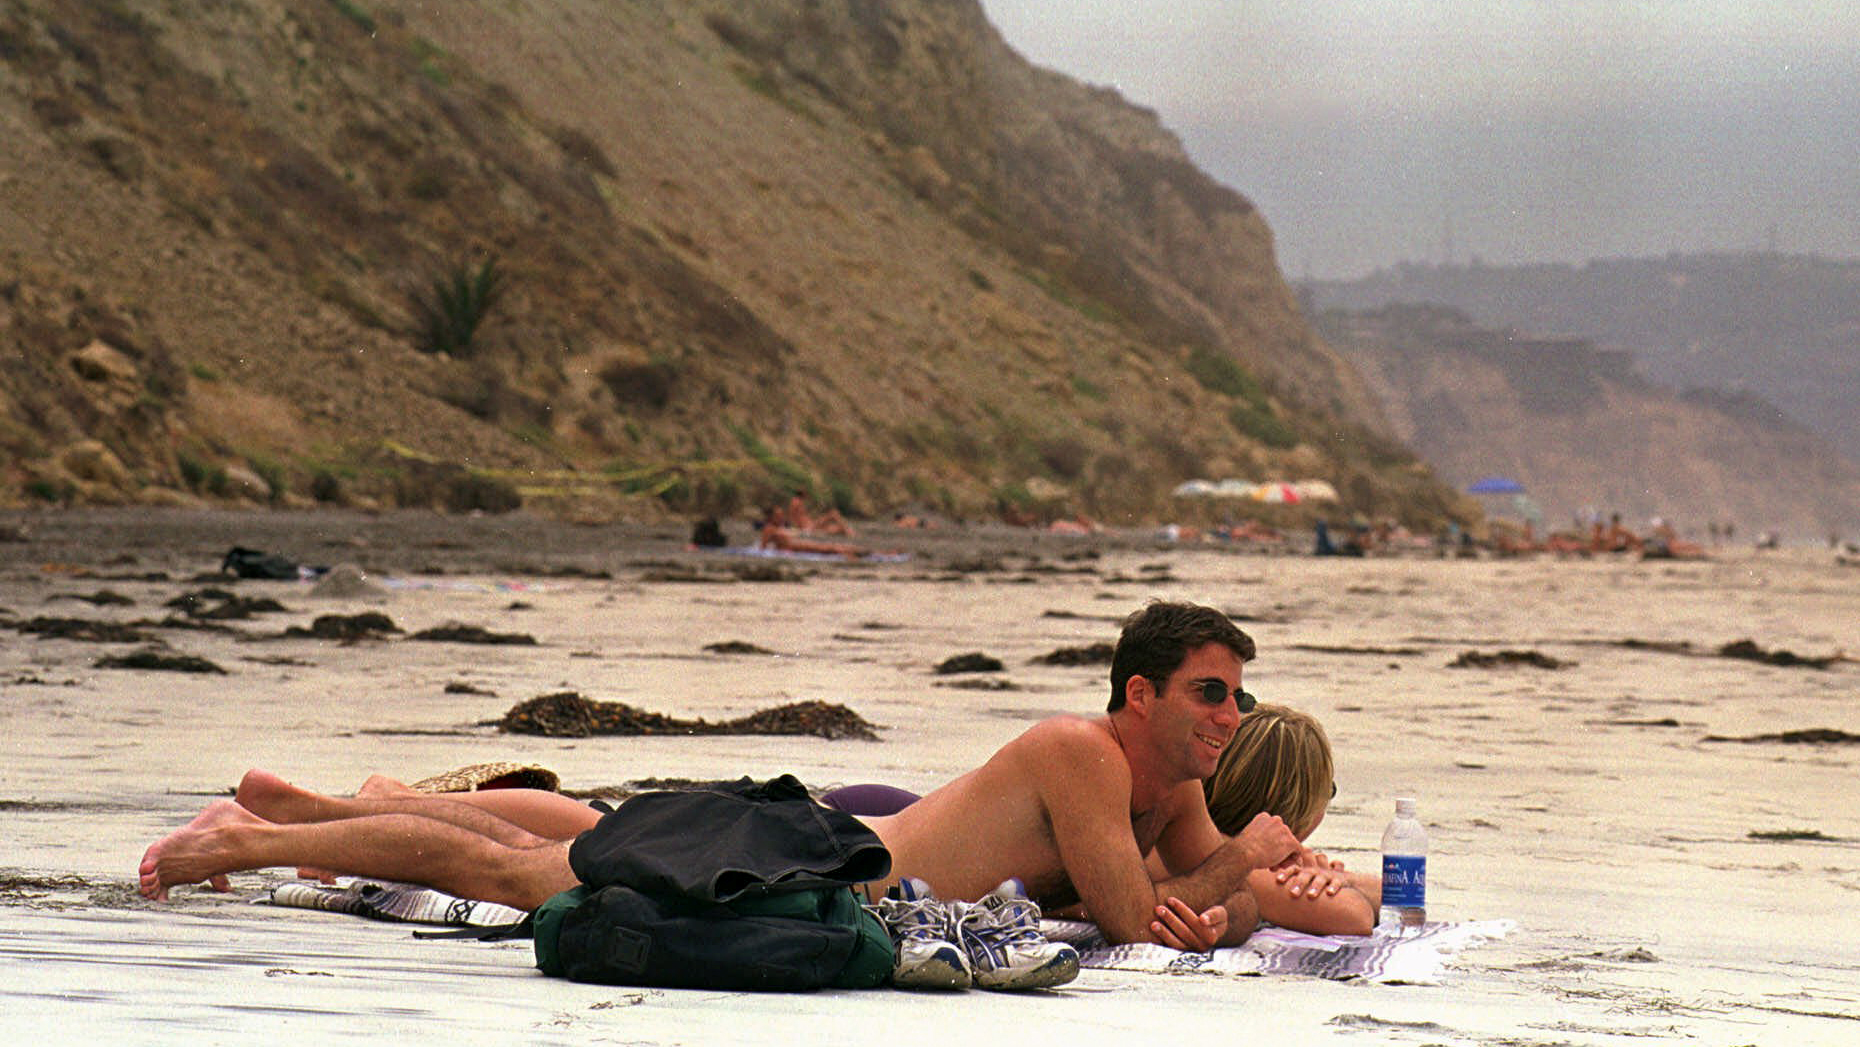 Boys naked beach Good Vibrations: